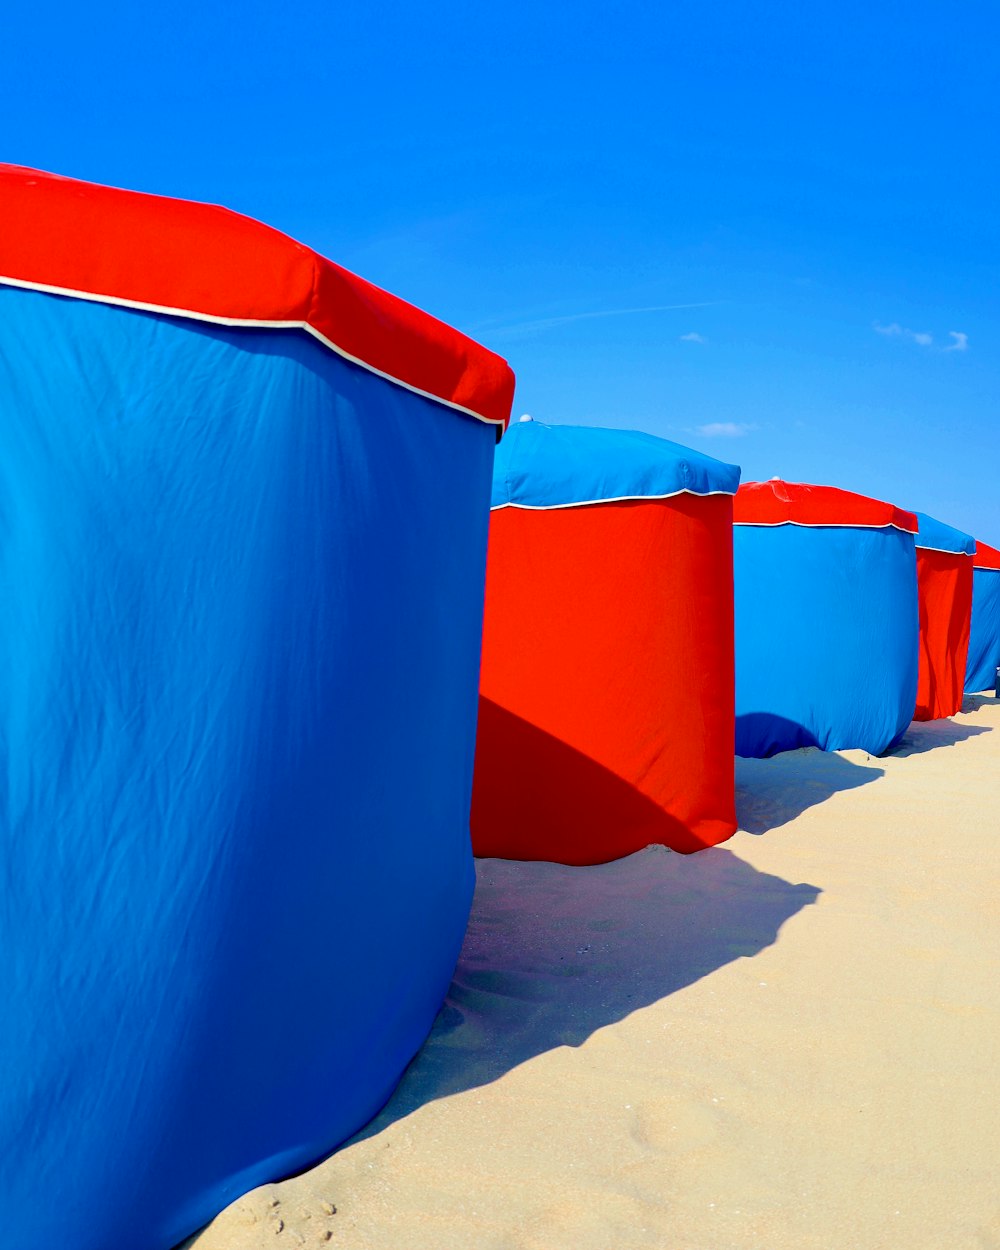 tenda inflável azul e vermelha na areia marrom durante o dia